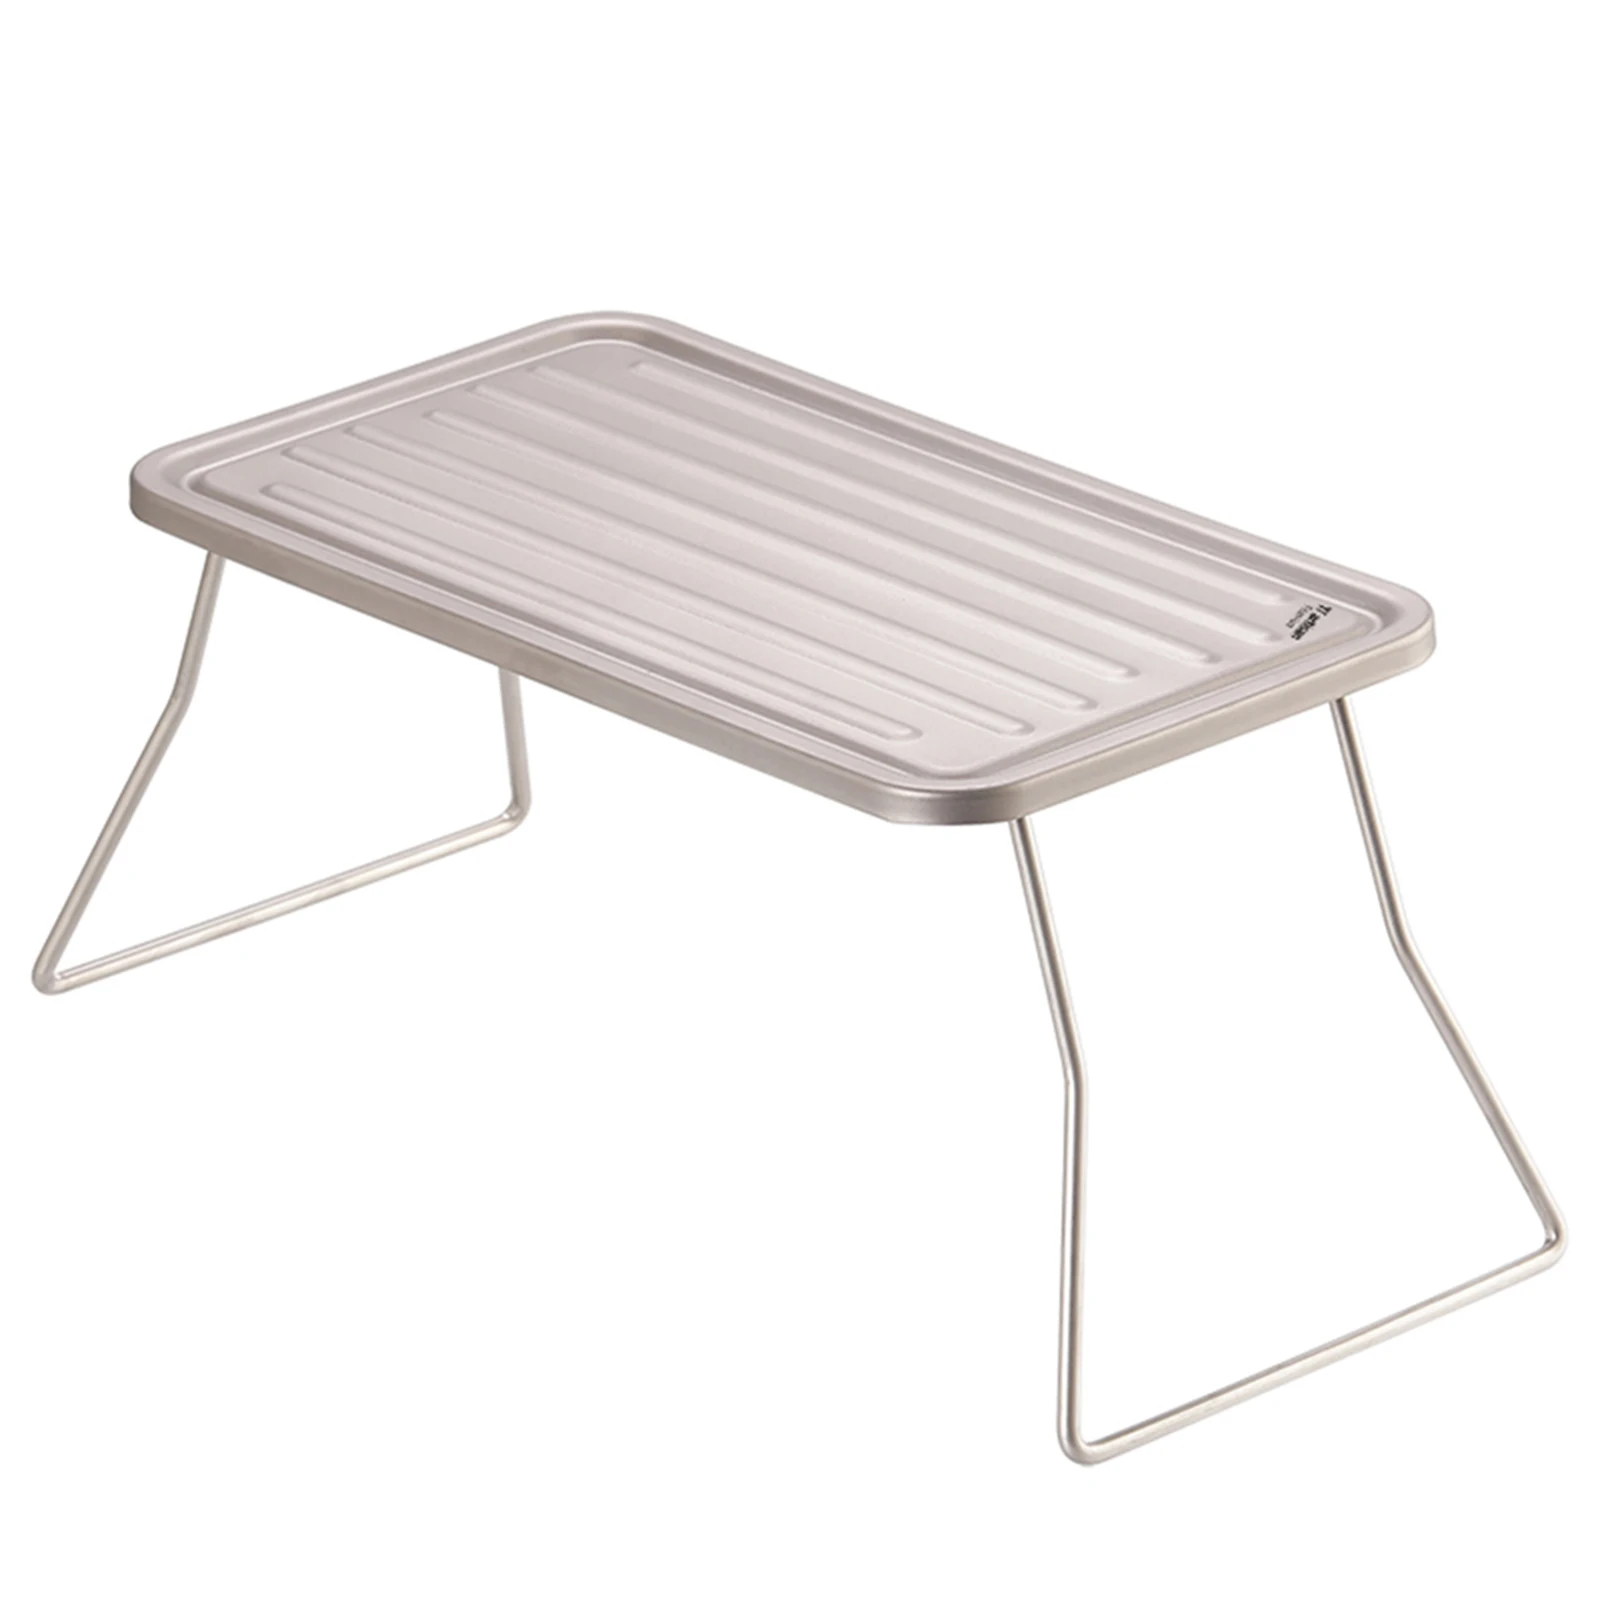 

Складной стол для кемпинга и барбекю, ультралегкий титановый стол 270*122*117 мм для пешего туризма, терка для пикника, дизайн ребристой пластины